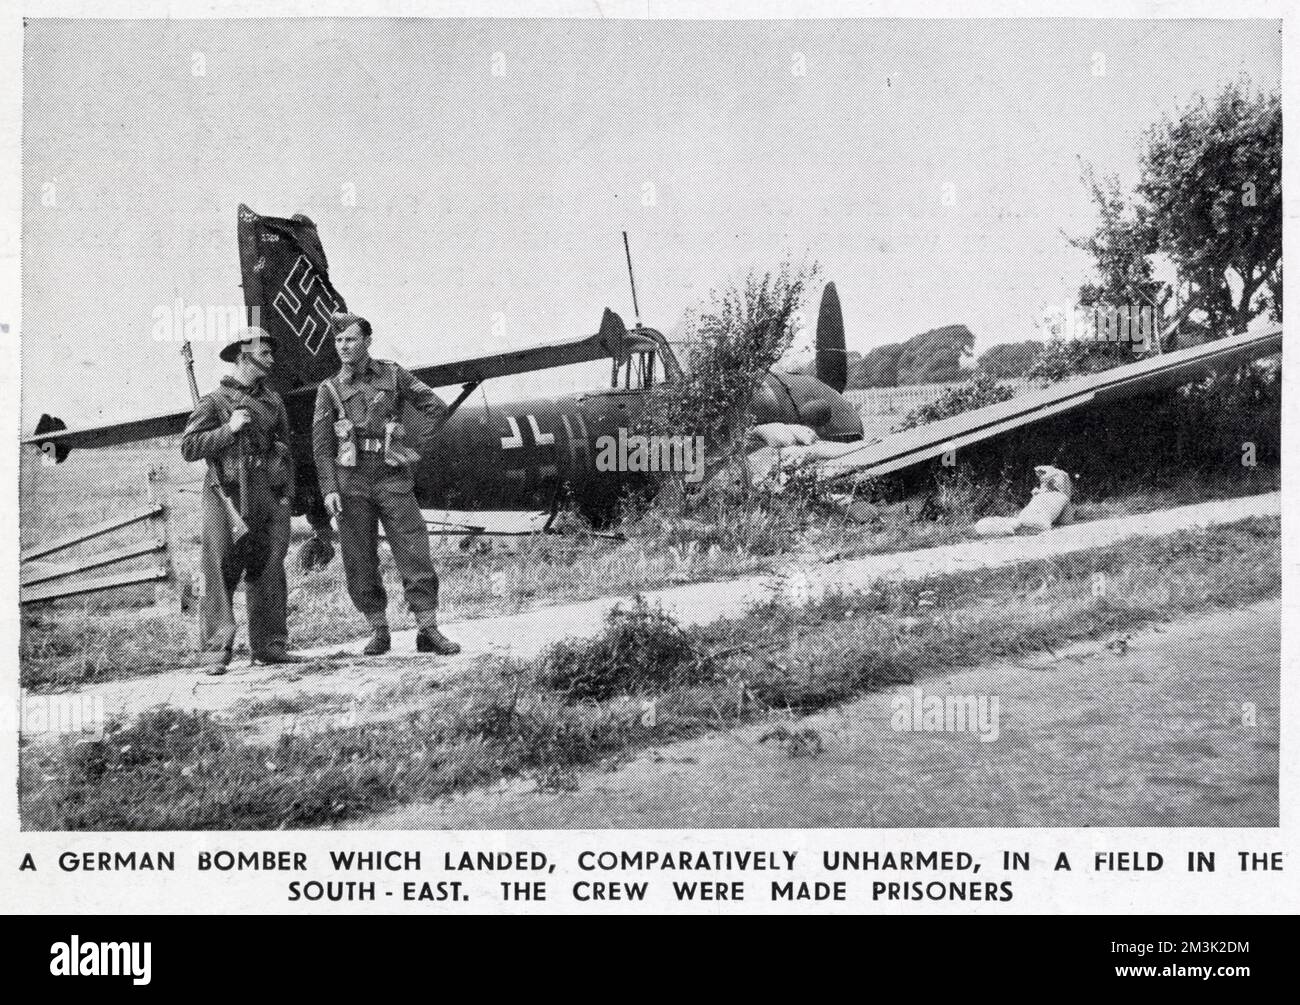 Ein abgestürzter deutscher Junkers Ju-87-Tauchbomber, auch bekannt als „Stuka“, irgendwo in Südostengland im Sommer 1940. Zwei britische Soldaten bewachen das abgestürzte Flugzeug. Stockfoto